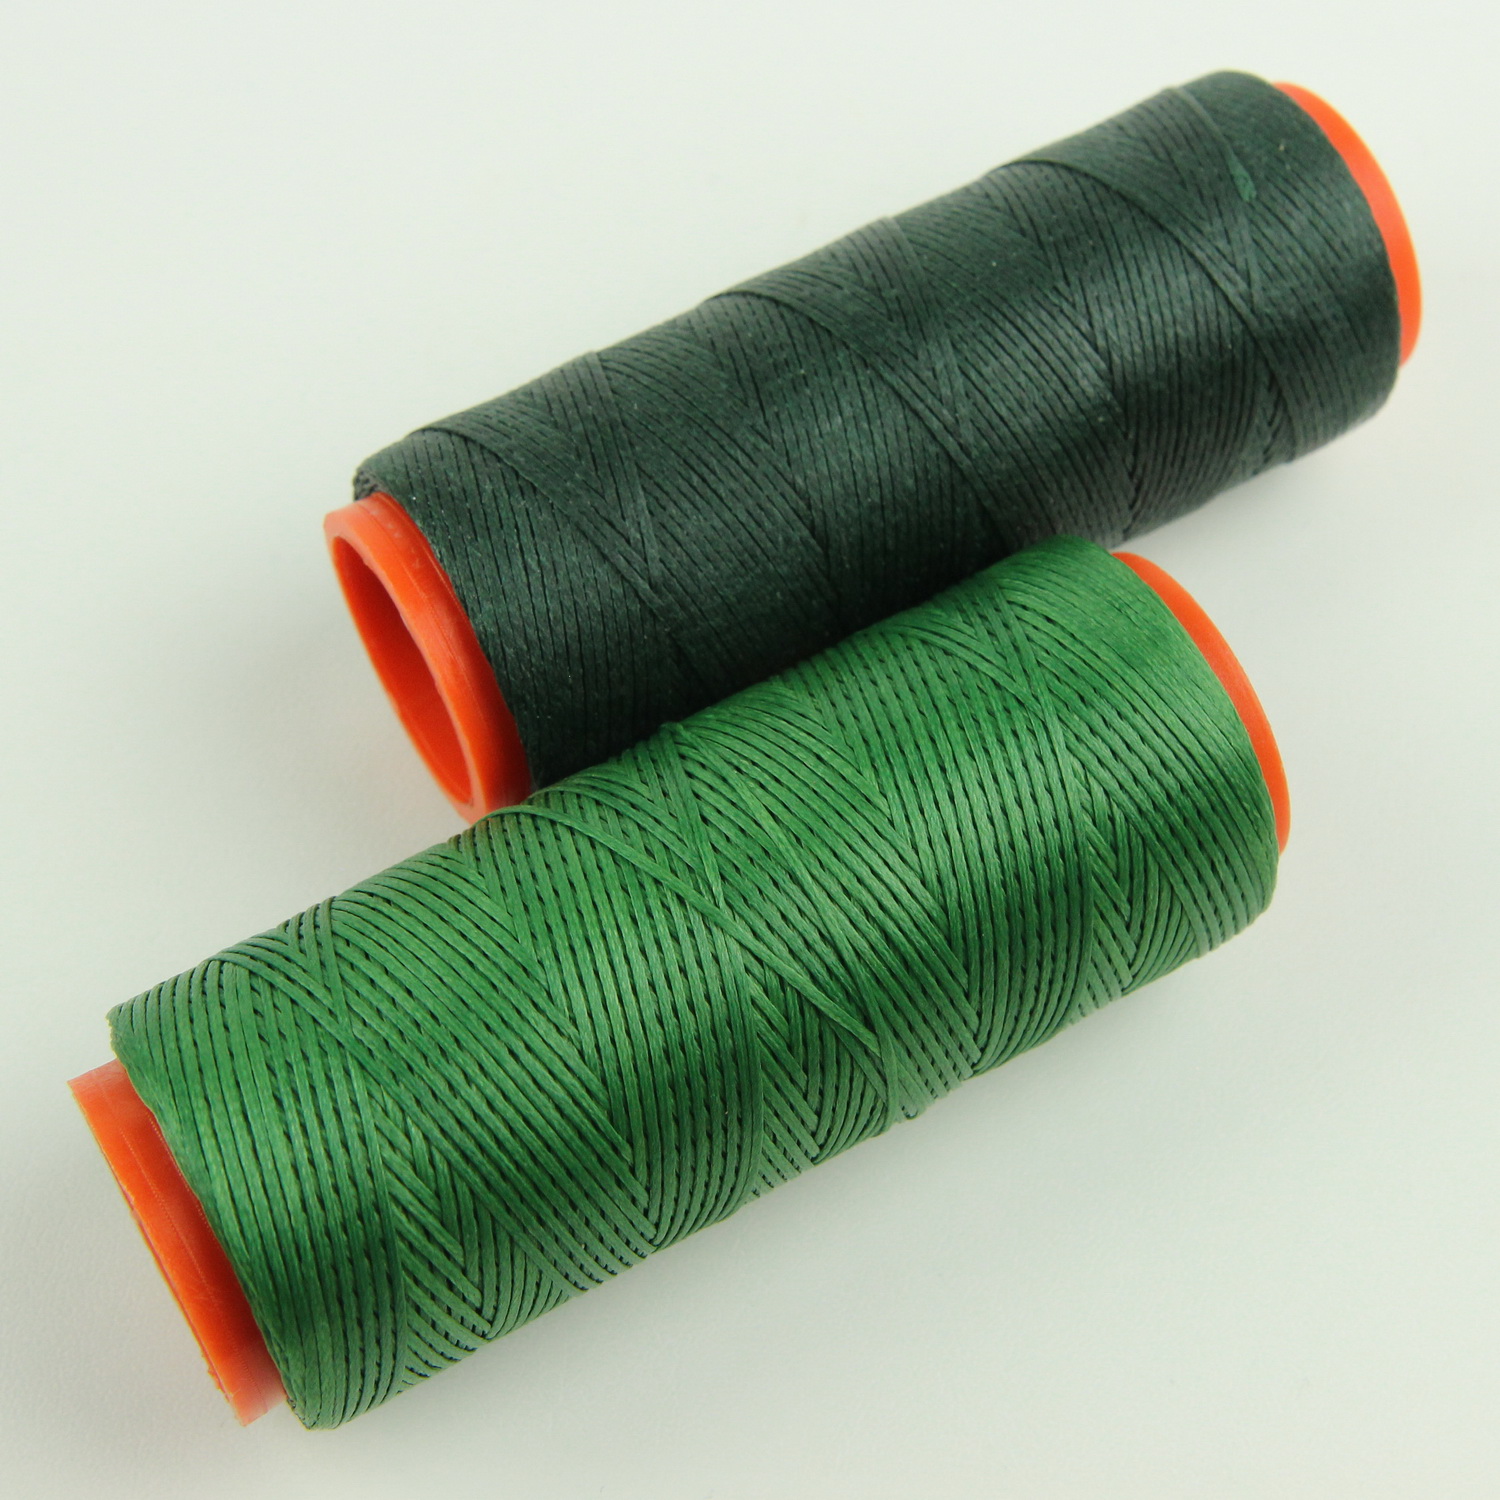 Нить для перетяжки руля вощеная (цвет зелёный 3709), толщина 0,8 мм, длина 100 метров "Турция" детальная фотка